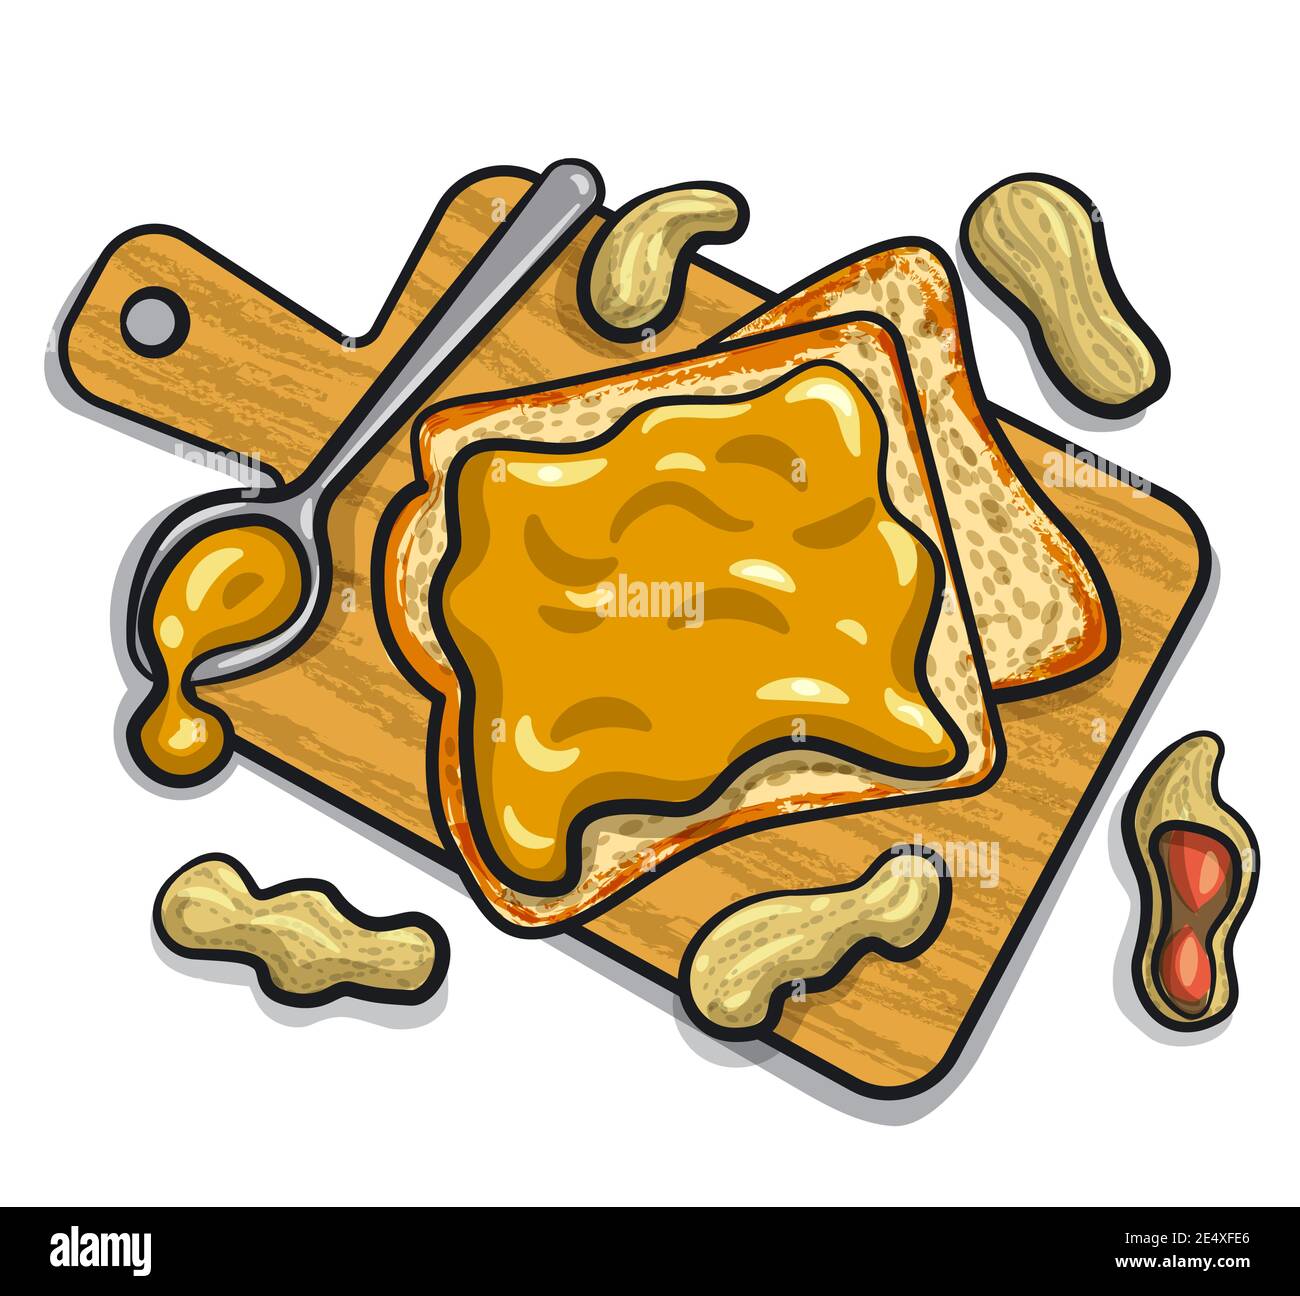 illustrazione dei sandwich di burro di arachidi con arachidi su un asse di legno Illustrazione Vettoriale